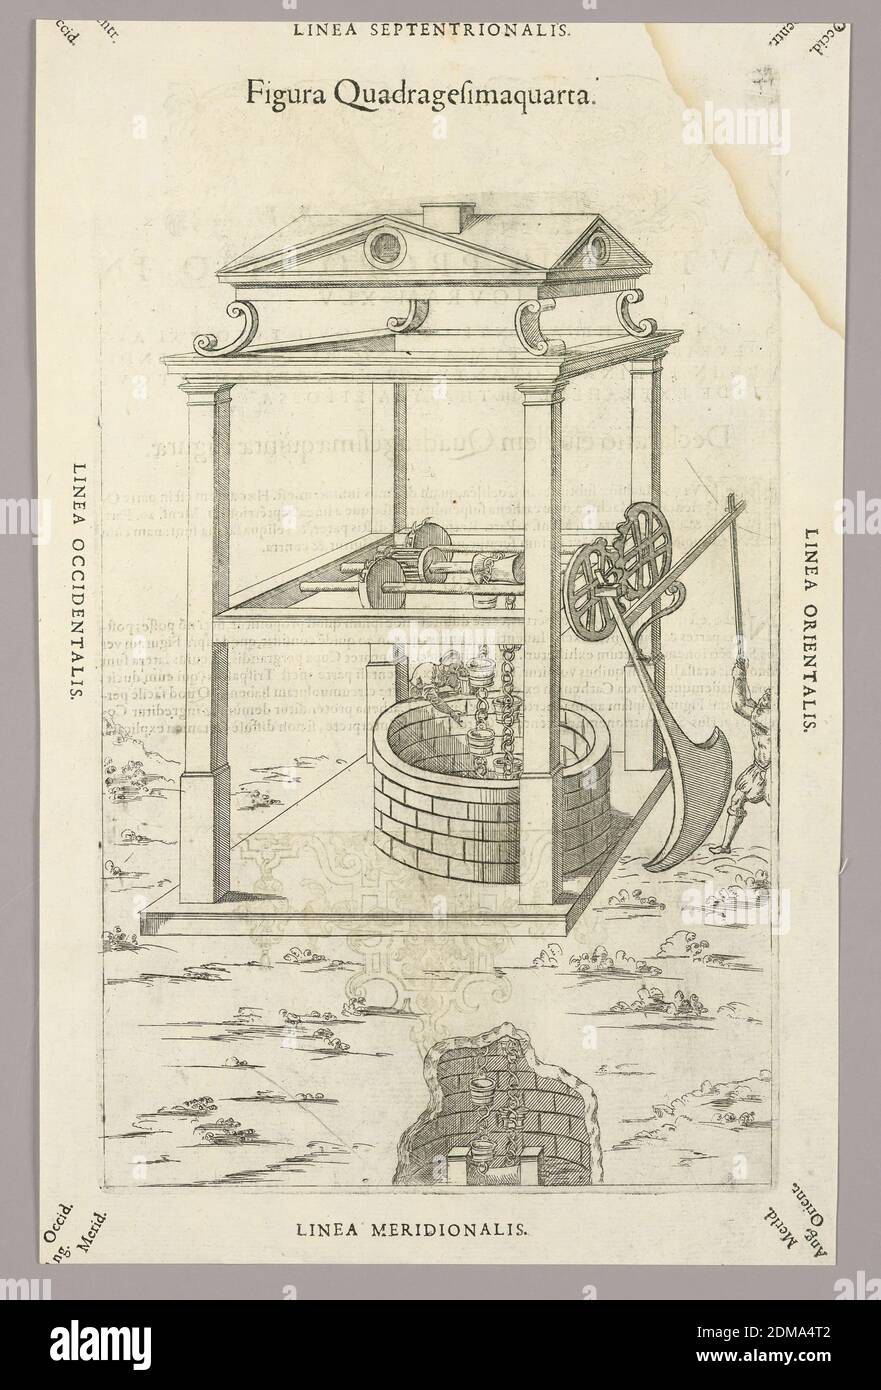 Eine deutsche Kutscher-Truhe, um 1700 EINE schwere, eiserne Truhe, der  zylindrische Körper mit durchgehenden Gurtbeschlägen. Klappdeckel,  Schlüssellochabdeckung durch einen versteckten Mechanismus gesichert.  Intakter Verriegelungsmechanismus mit drei